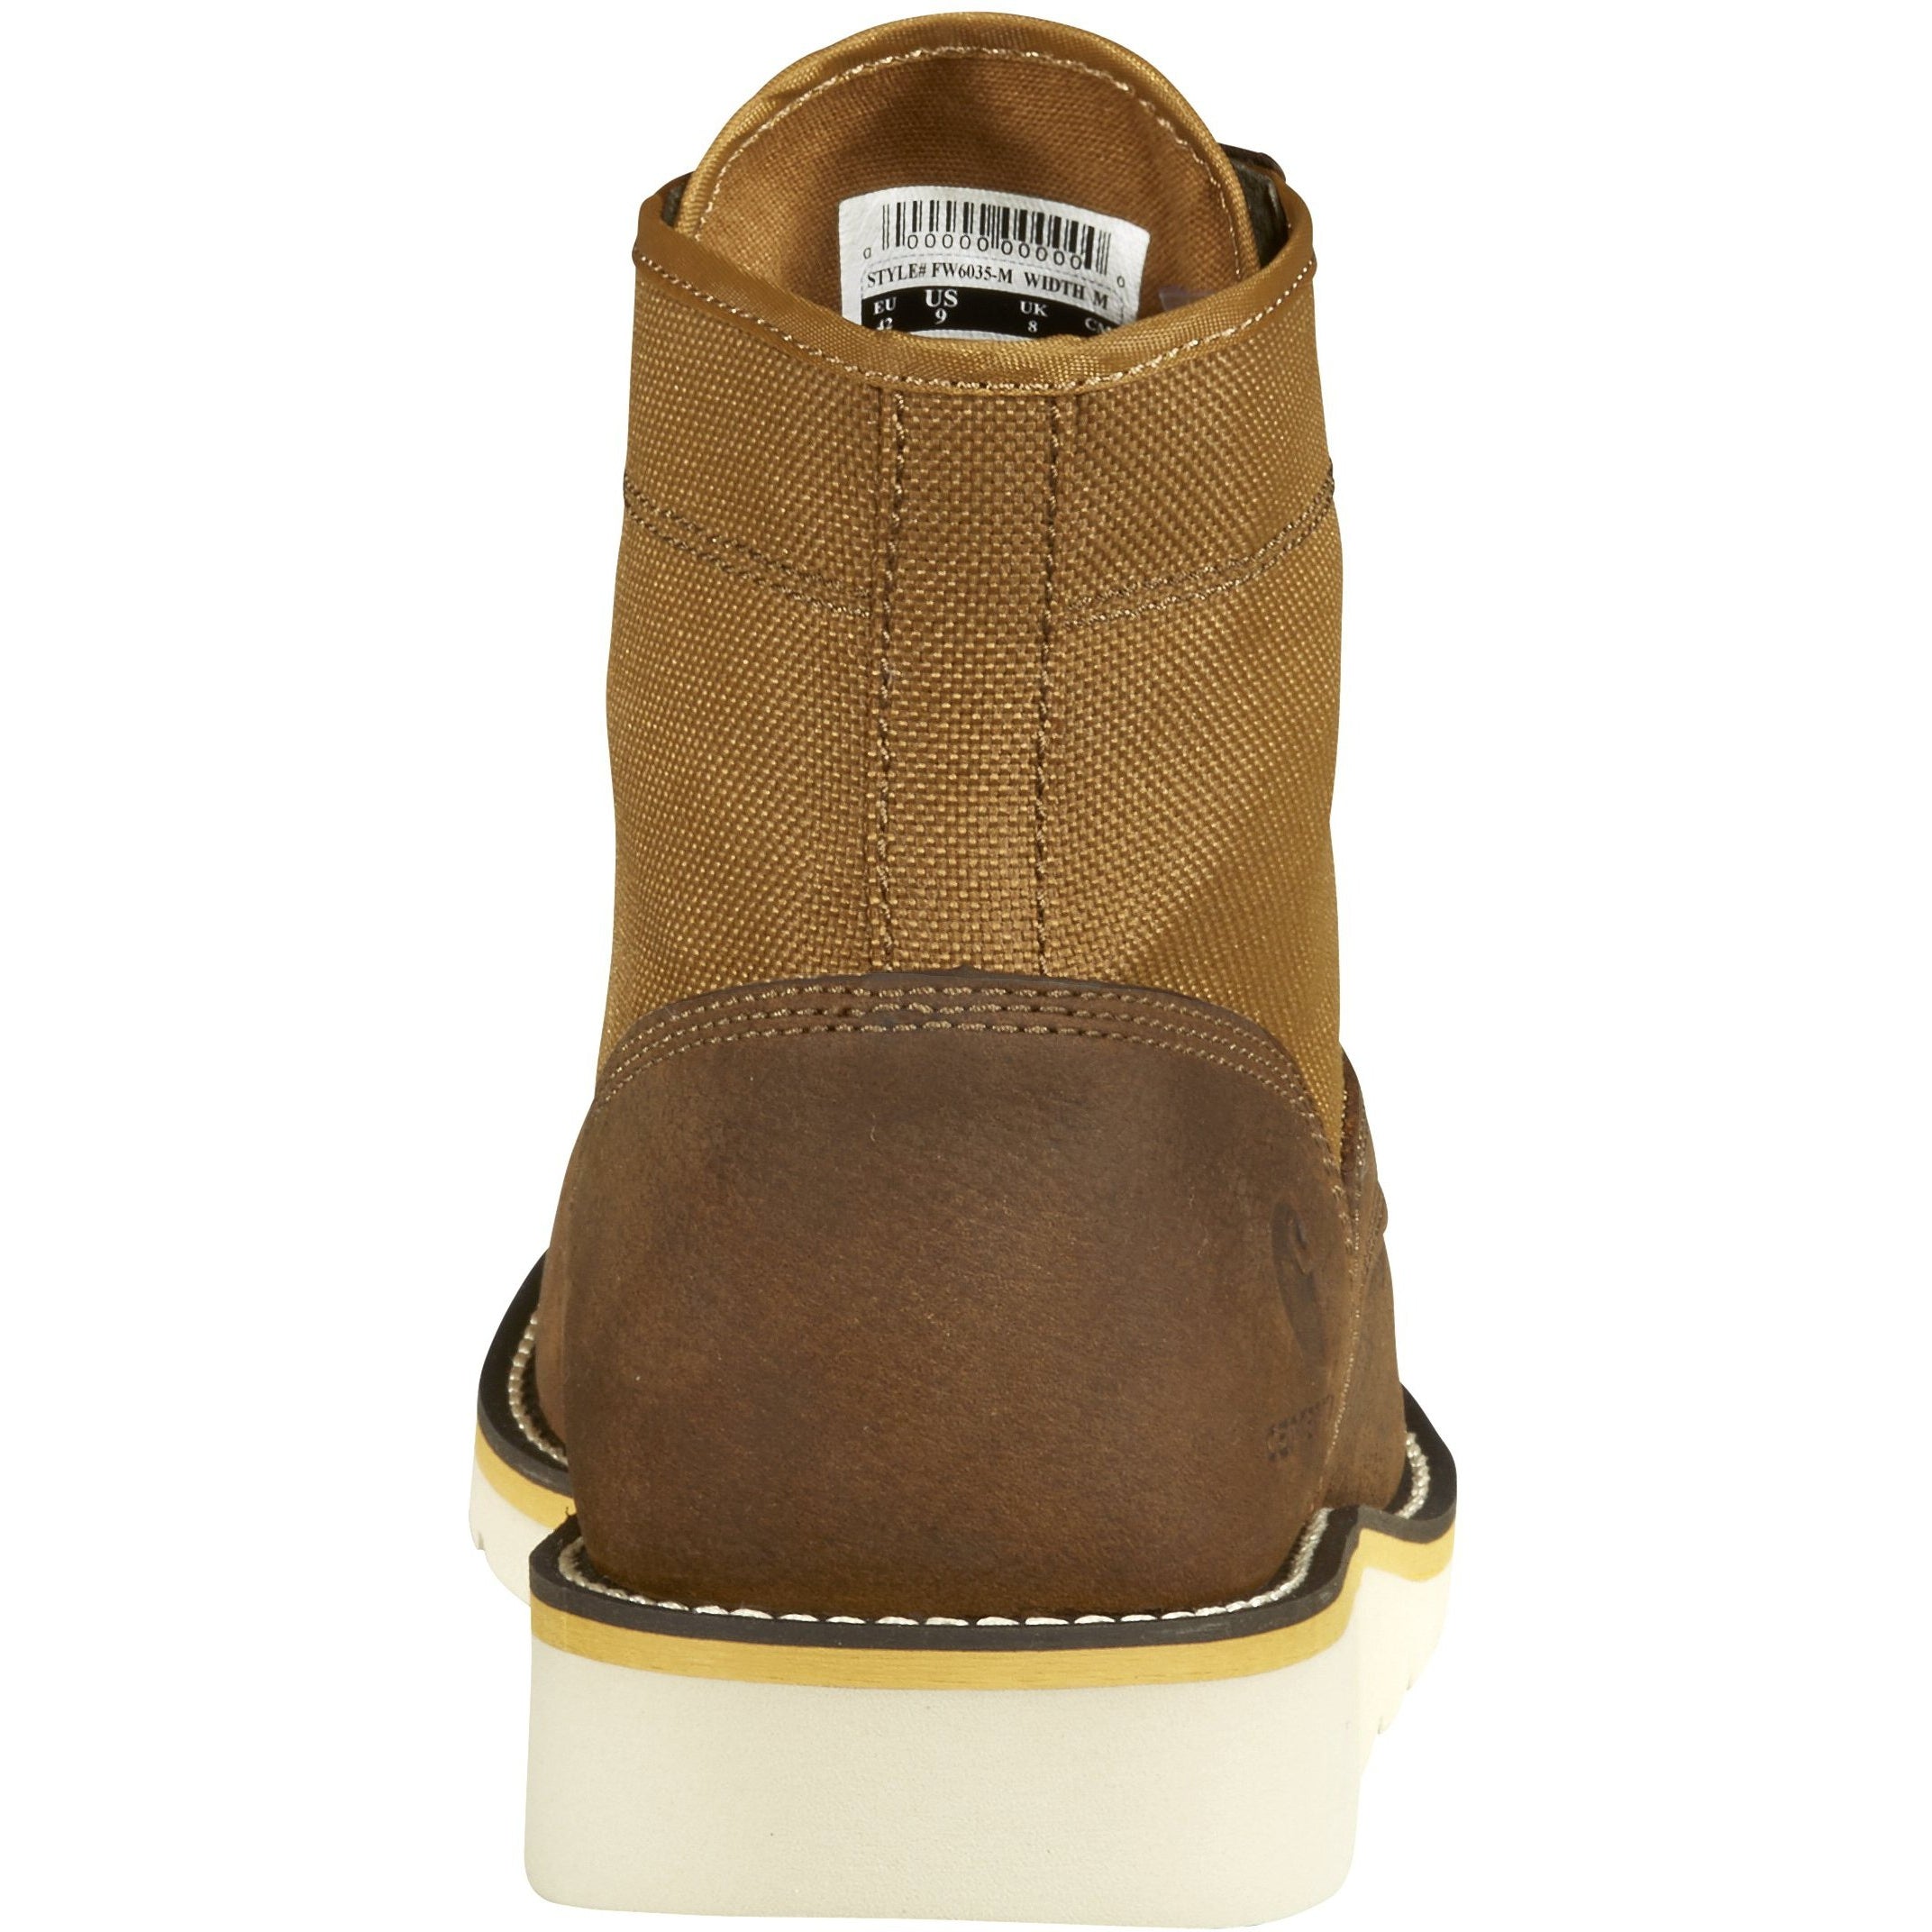 Carhartt Men's 6" Soft Toe Wedge Work Boot - Brown - FW6035-M  - Overlook Boots